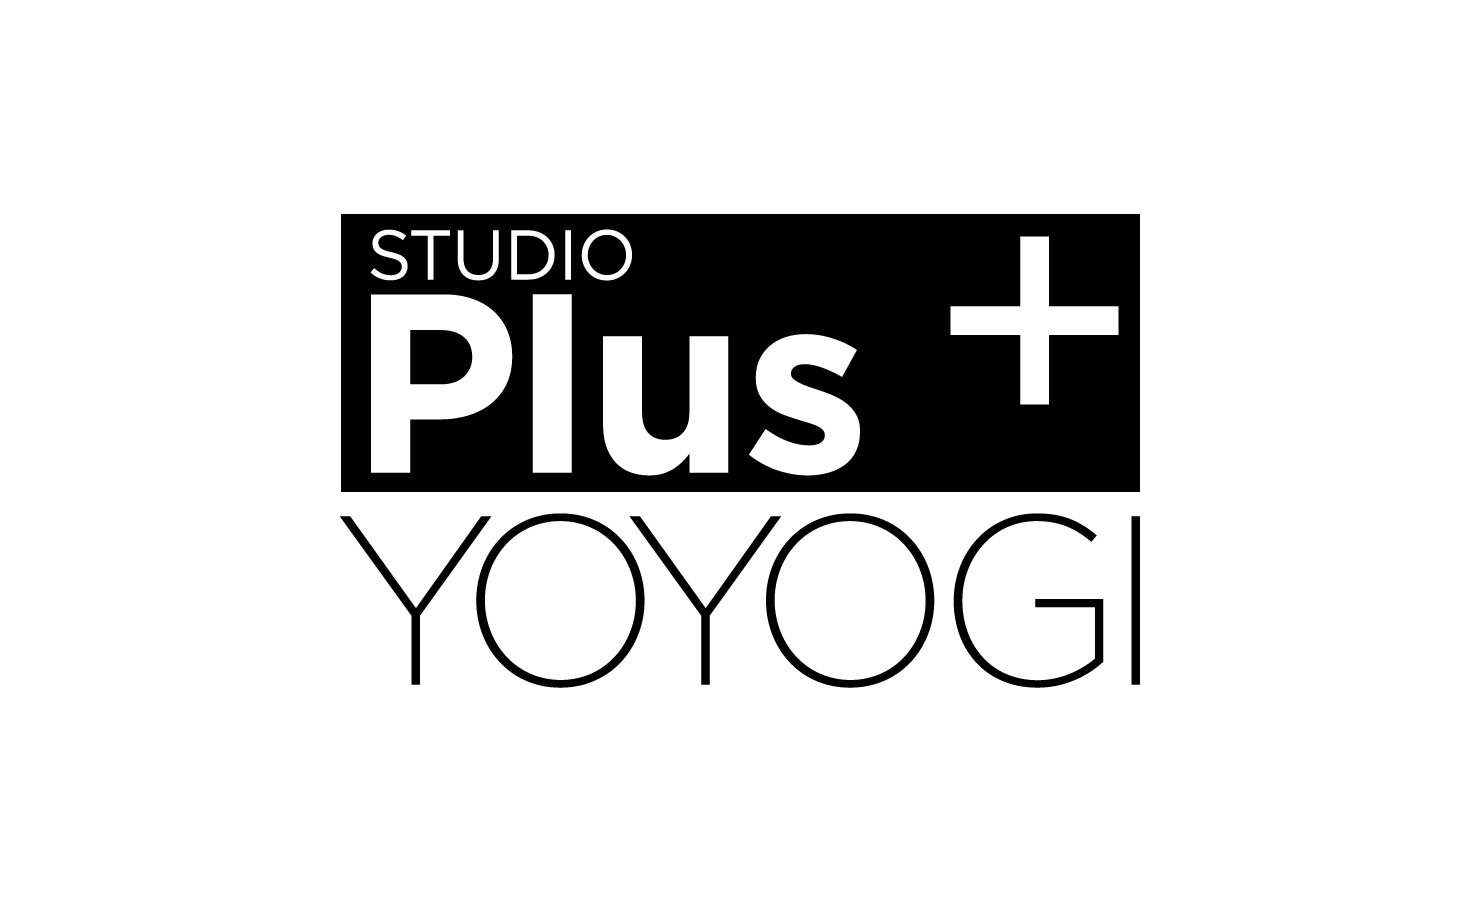 株式会社東京映像社 STUDIO PLUS ロゴ